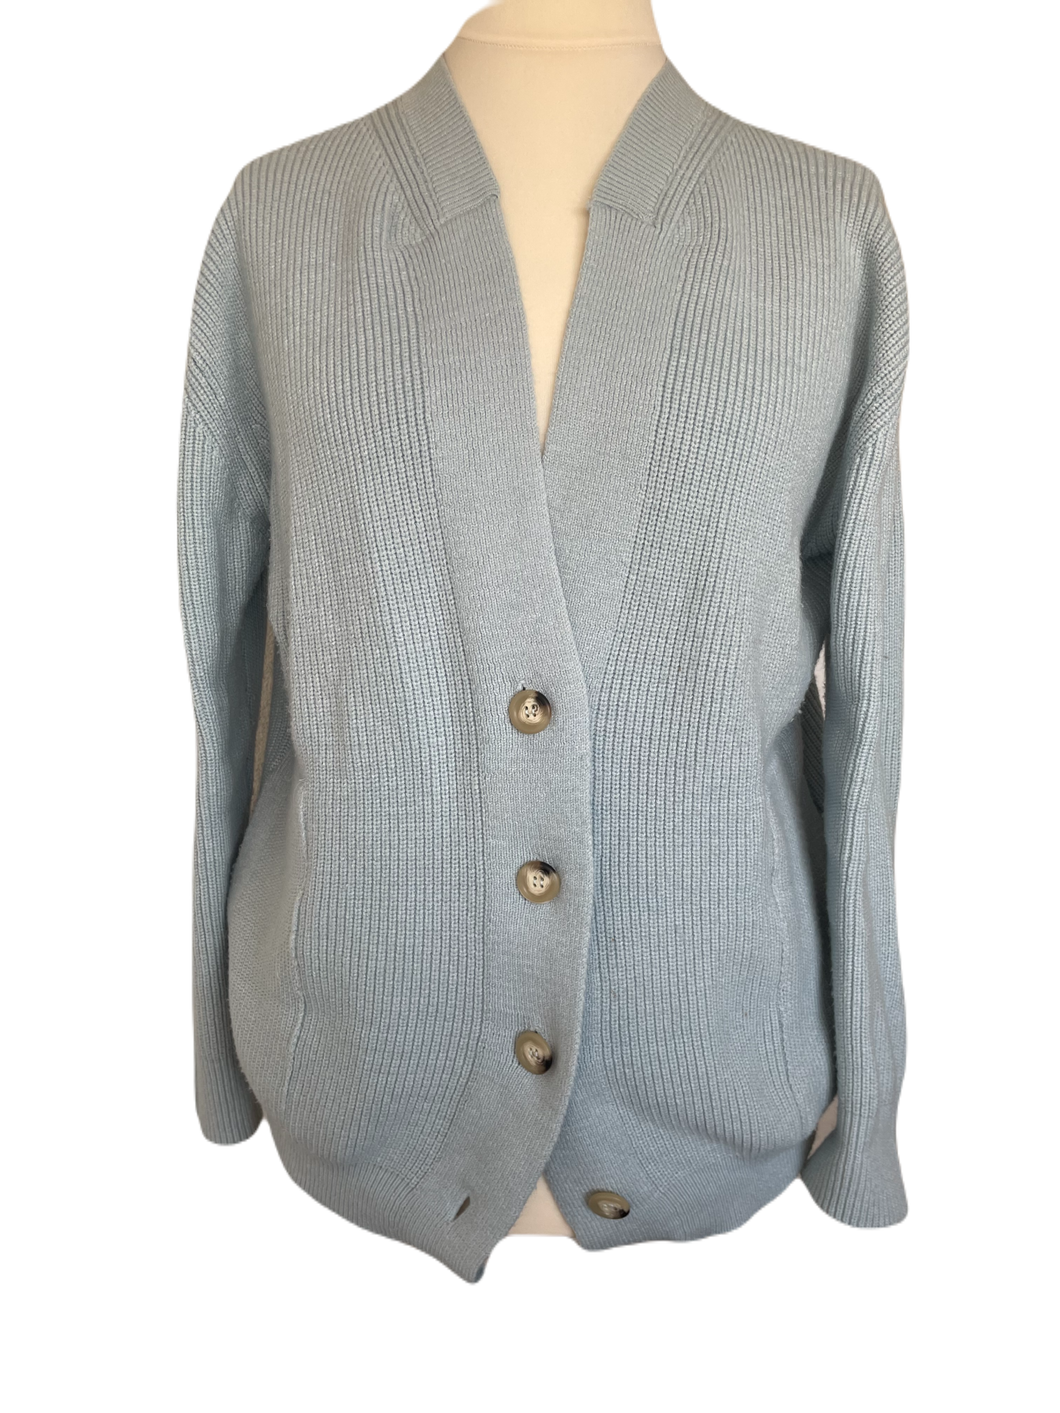 Lichtblauw Vest Santo van My Favourite Piece is van een heerlijk zachte stof, een mooie knitwear. Vest heeft een V-hals, lange mouwen, zakken en knopen om het vest te sluiten. Prachtig vest van viscose, goed te combineren met een travel blouse of top!